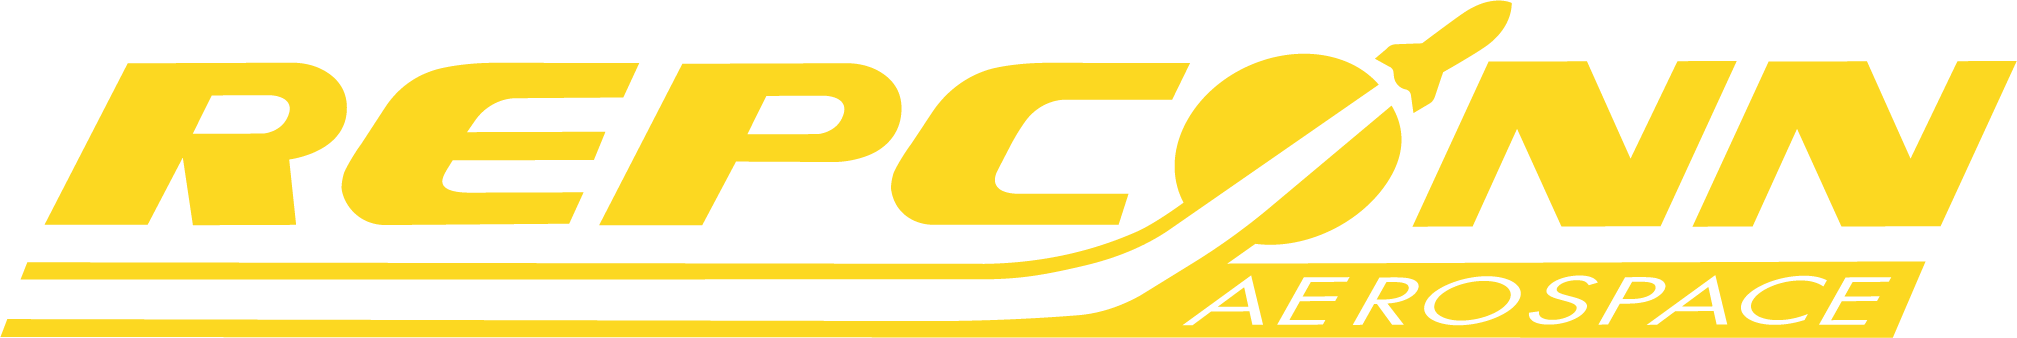 Repconn_logo.png